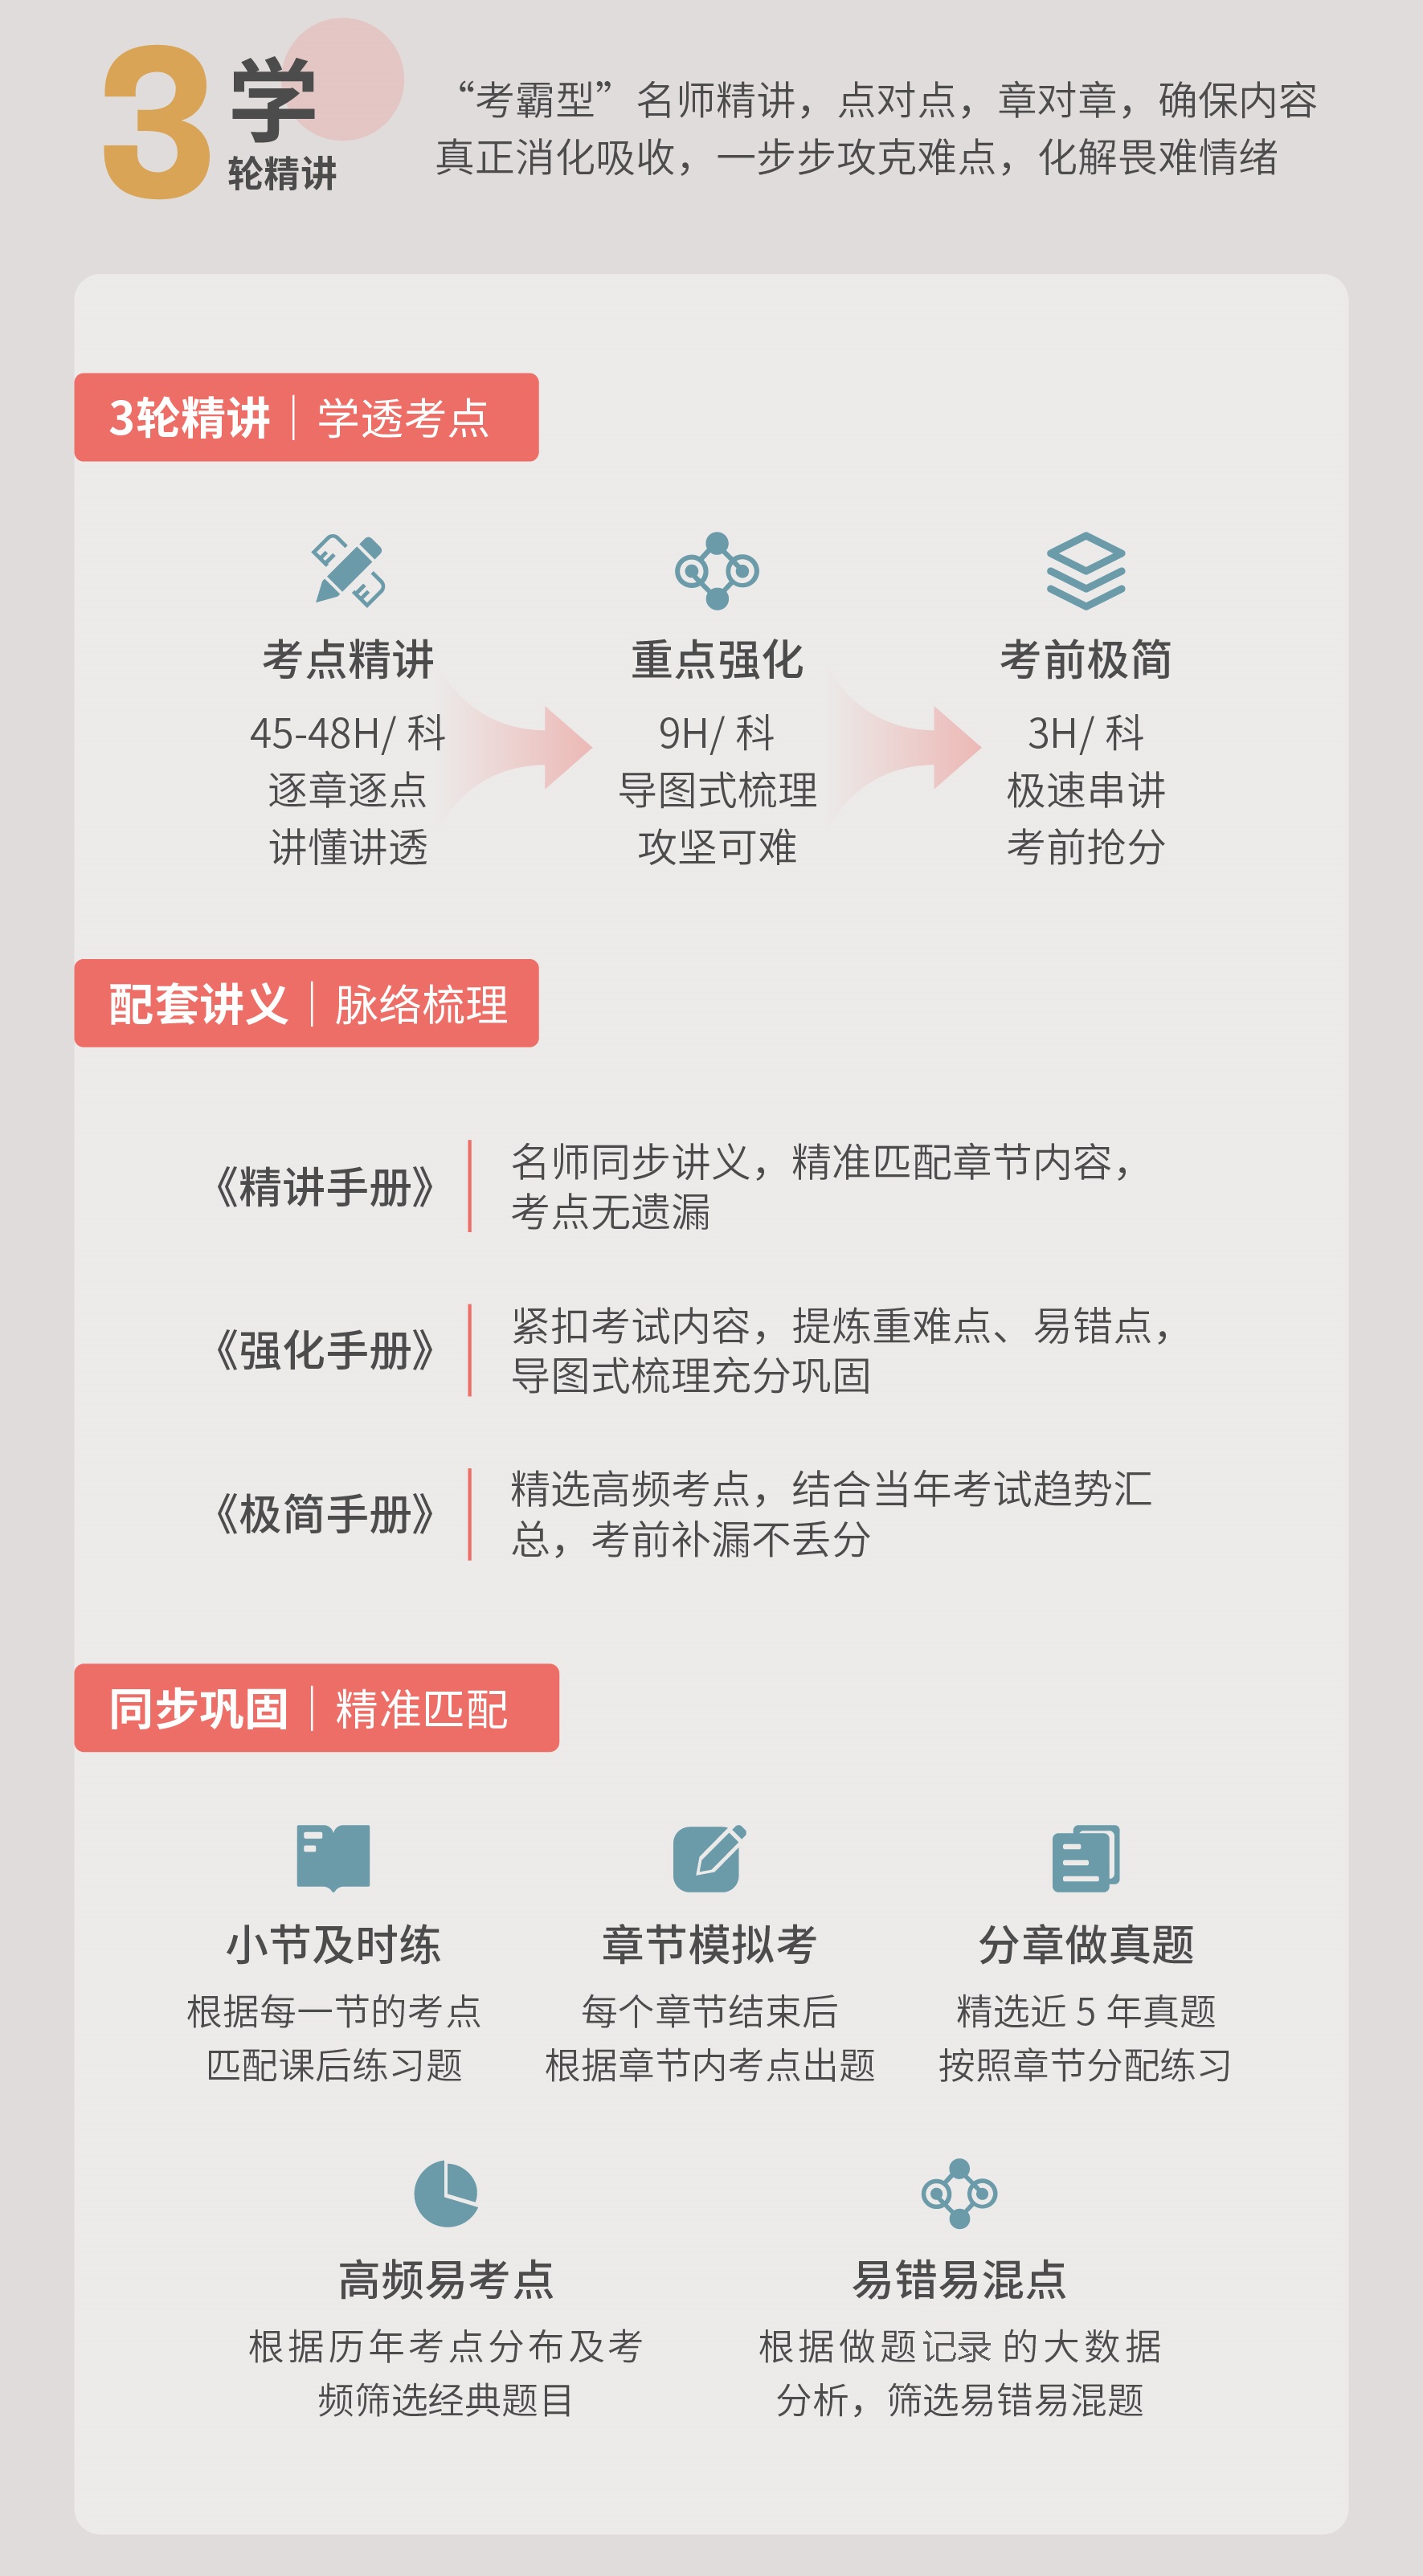 https://simg01.gaodunwangxiao.com/uploadfiles/product-center/202211/11/39d1d_20221111170957.jpg